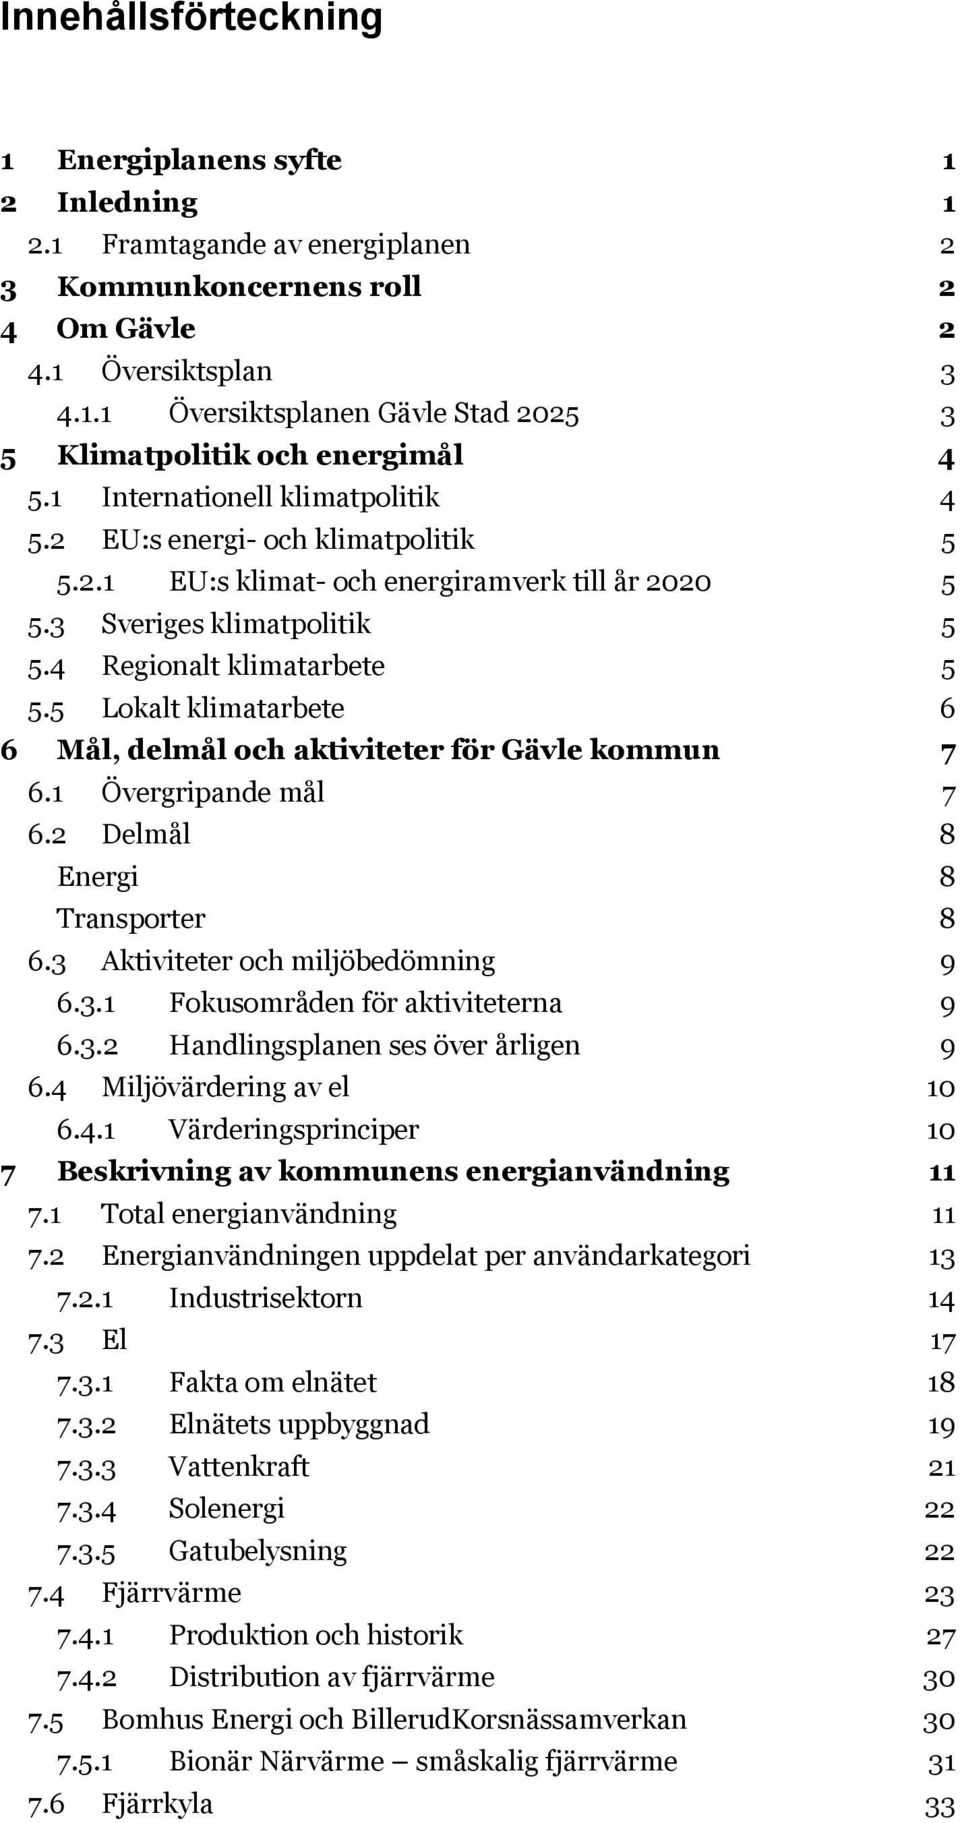 5 Lokalt klimatarbete 6 6 Mål, delmål och aktiviteter för Gävle kommun 7 6.1 Övergripande mål 7 6.2 Delmål 8 Energi 8 Transporter 8 6.3 Aktiviteter och miljöbedömning 9 6.3.1 Fokusområden för aktiviteterna 9 6.